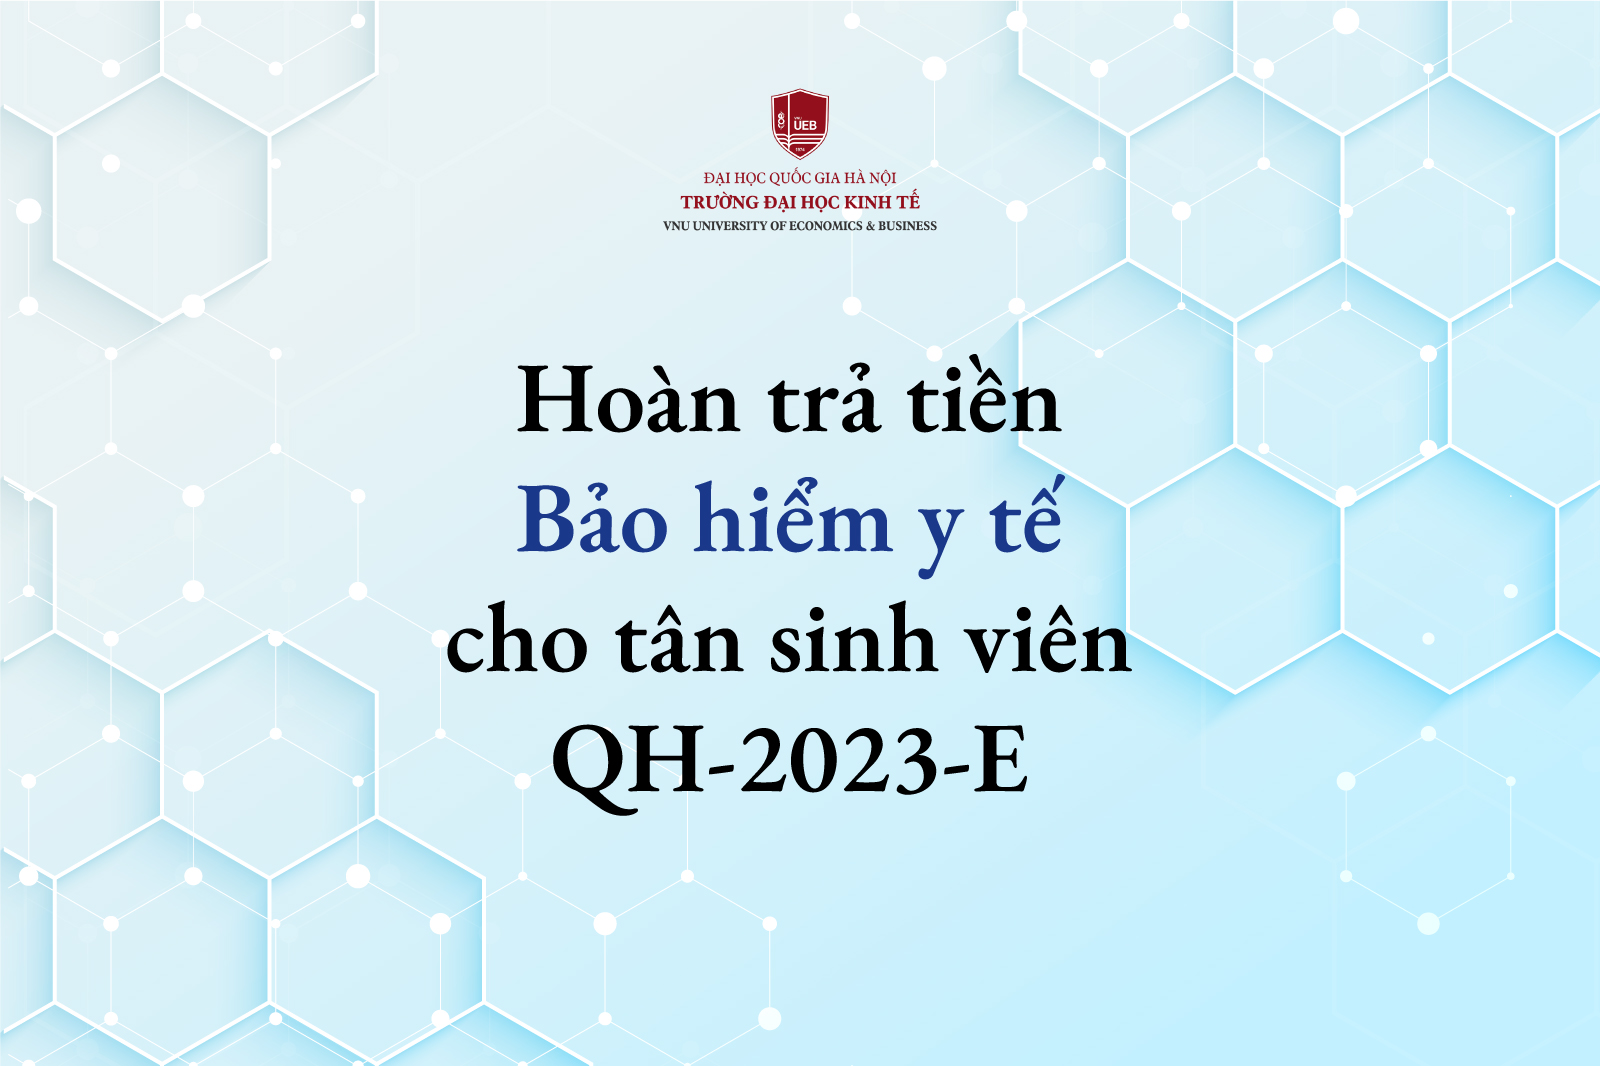 Thông báo hoàn trả tiền Bảo hiểm y tế cho Tân sinh viên khóa QH-2023-E